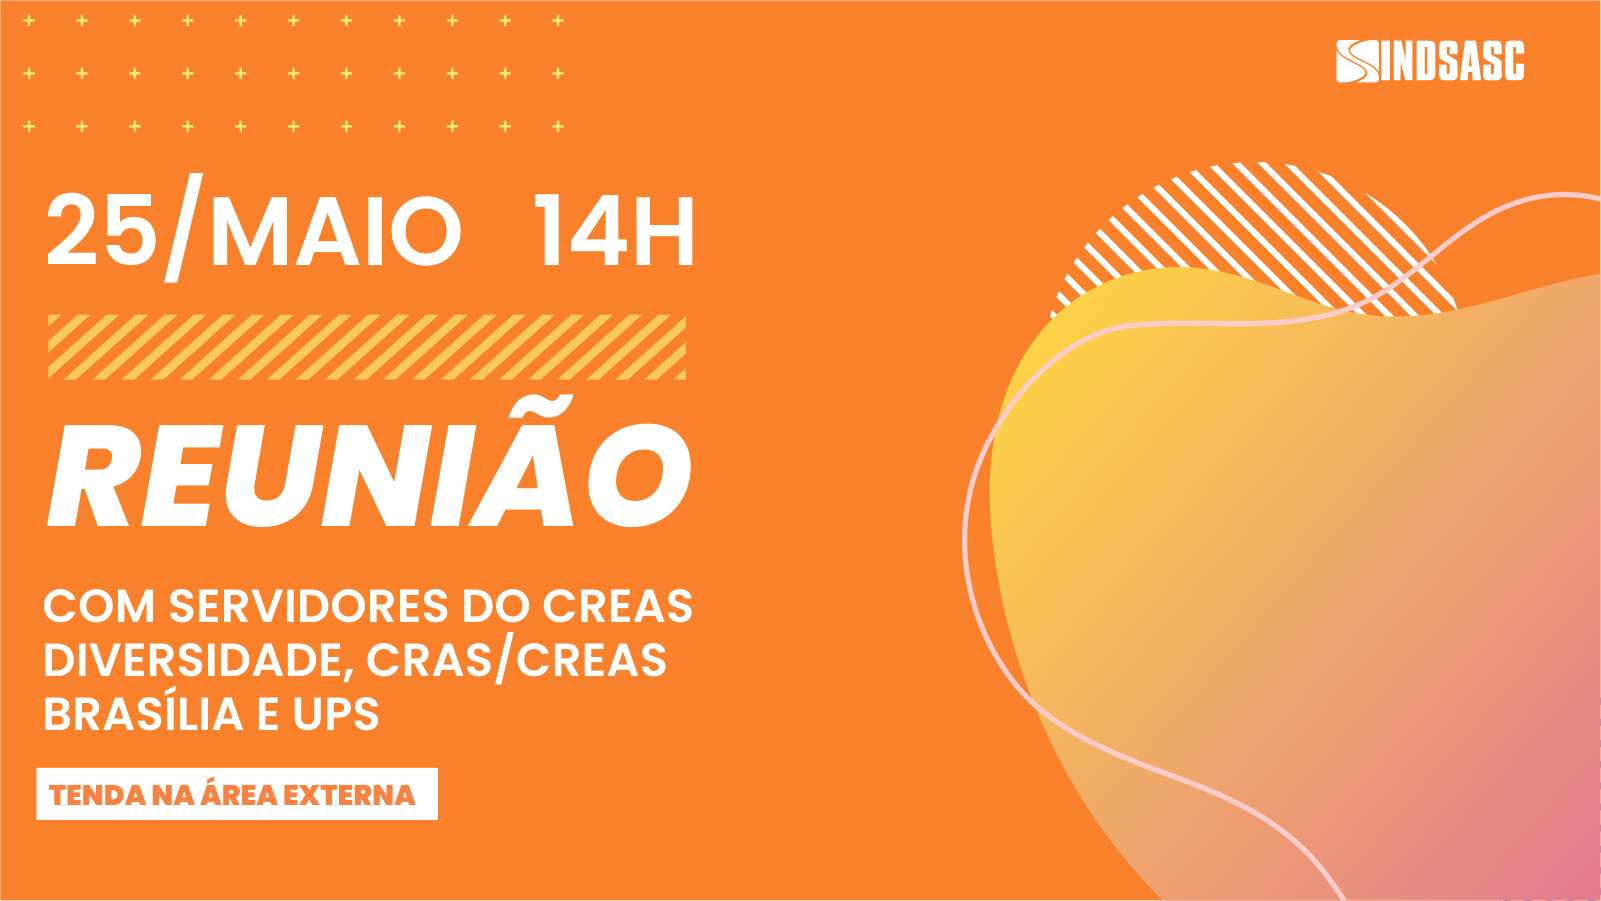 Sindsasc convoca reunião com servidores do Creas Diversidade, Cras/Creas Brasília e UPS